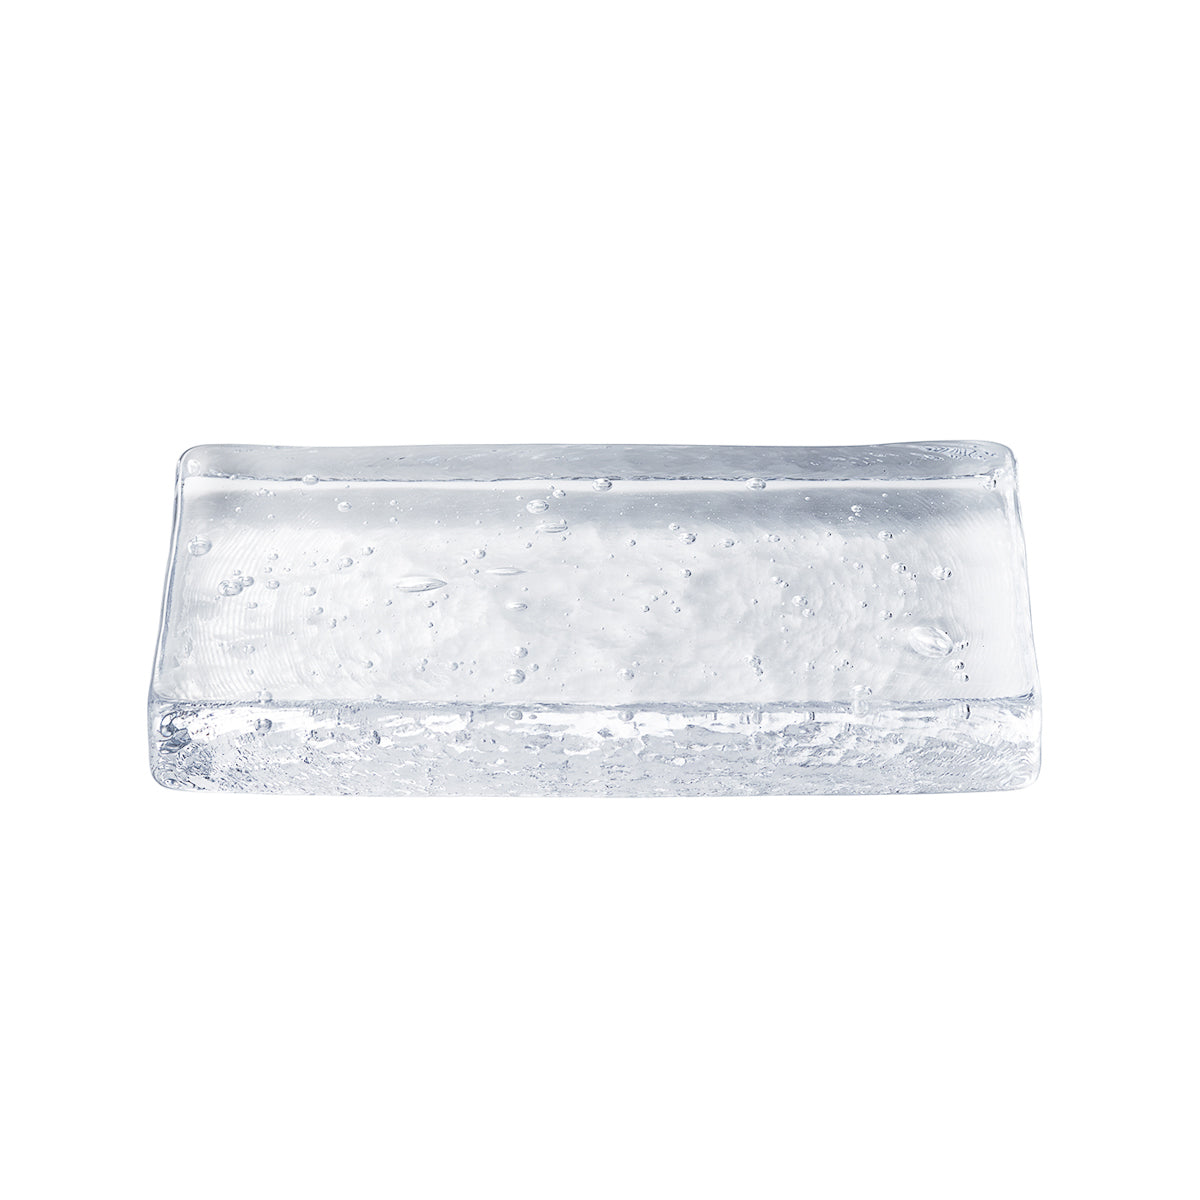 ガラス食器 アイスプレート 15cm/10cm L(8*15cm) Yoshinuma-glass Studio1156